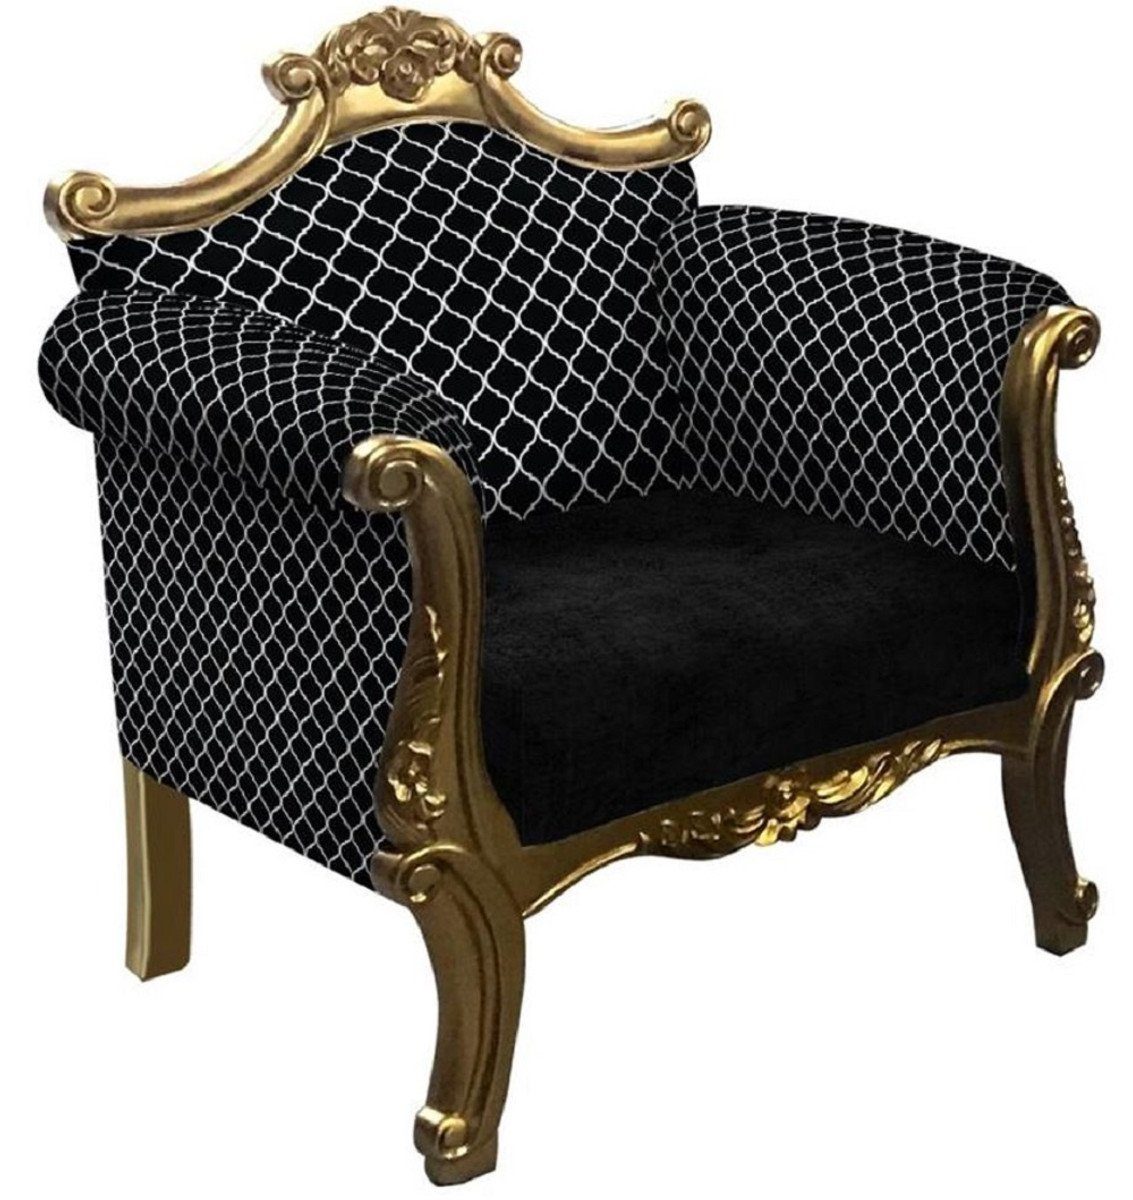 Casa Padrino Sessel Barock Sessel mit Muster Schwarz / Silber / Gold - Handgefertigter Wohnzimmer Sessel im Barockstil - Barock Wohnzimmer Möbel